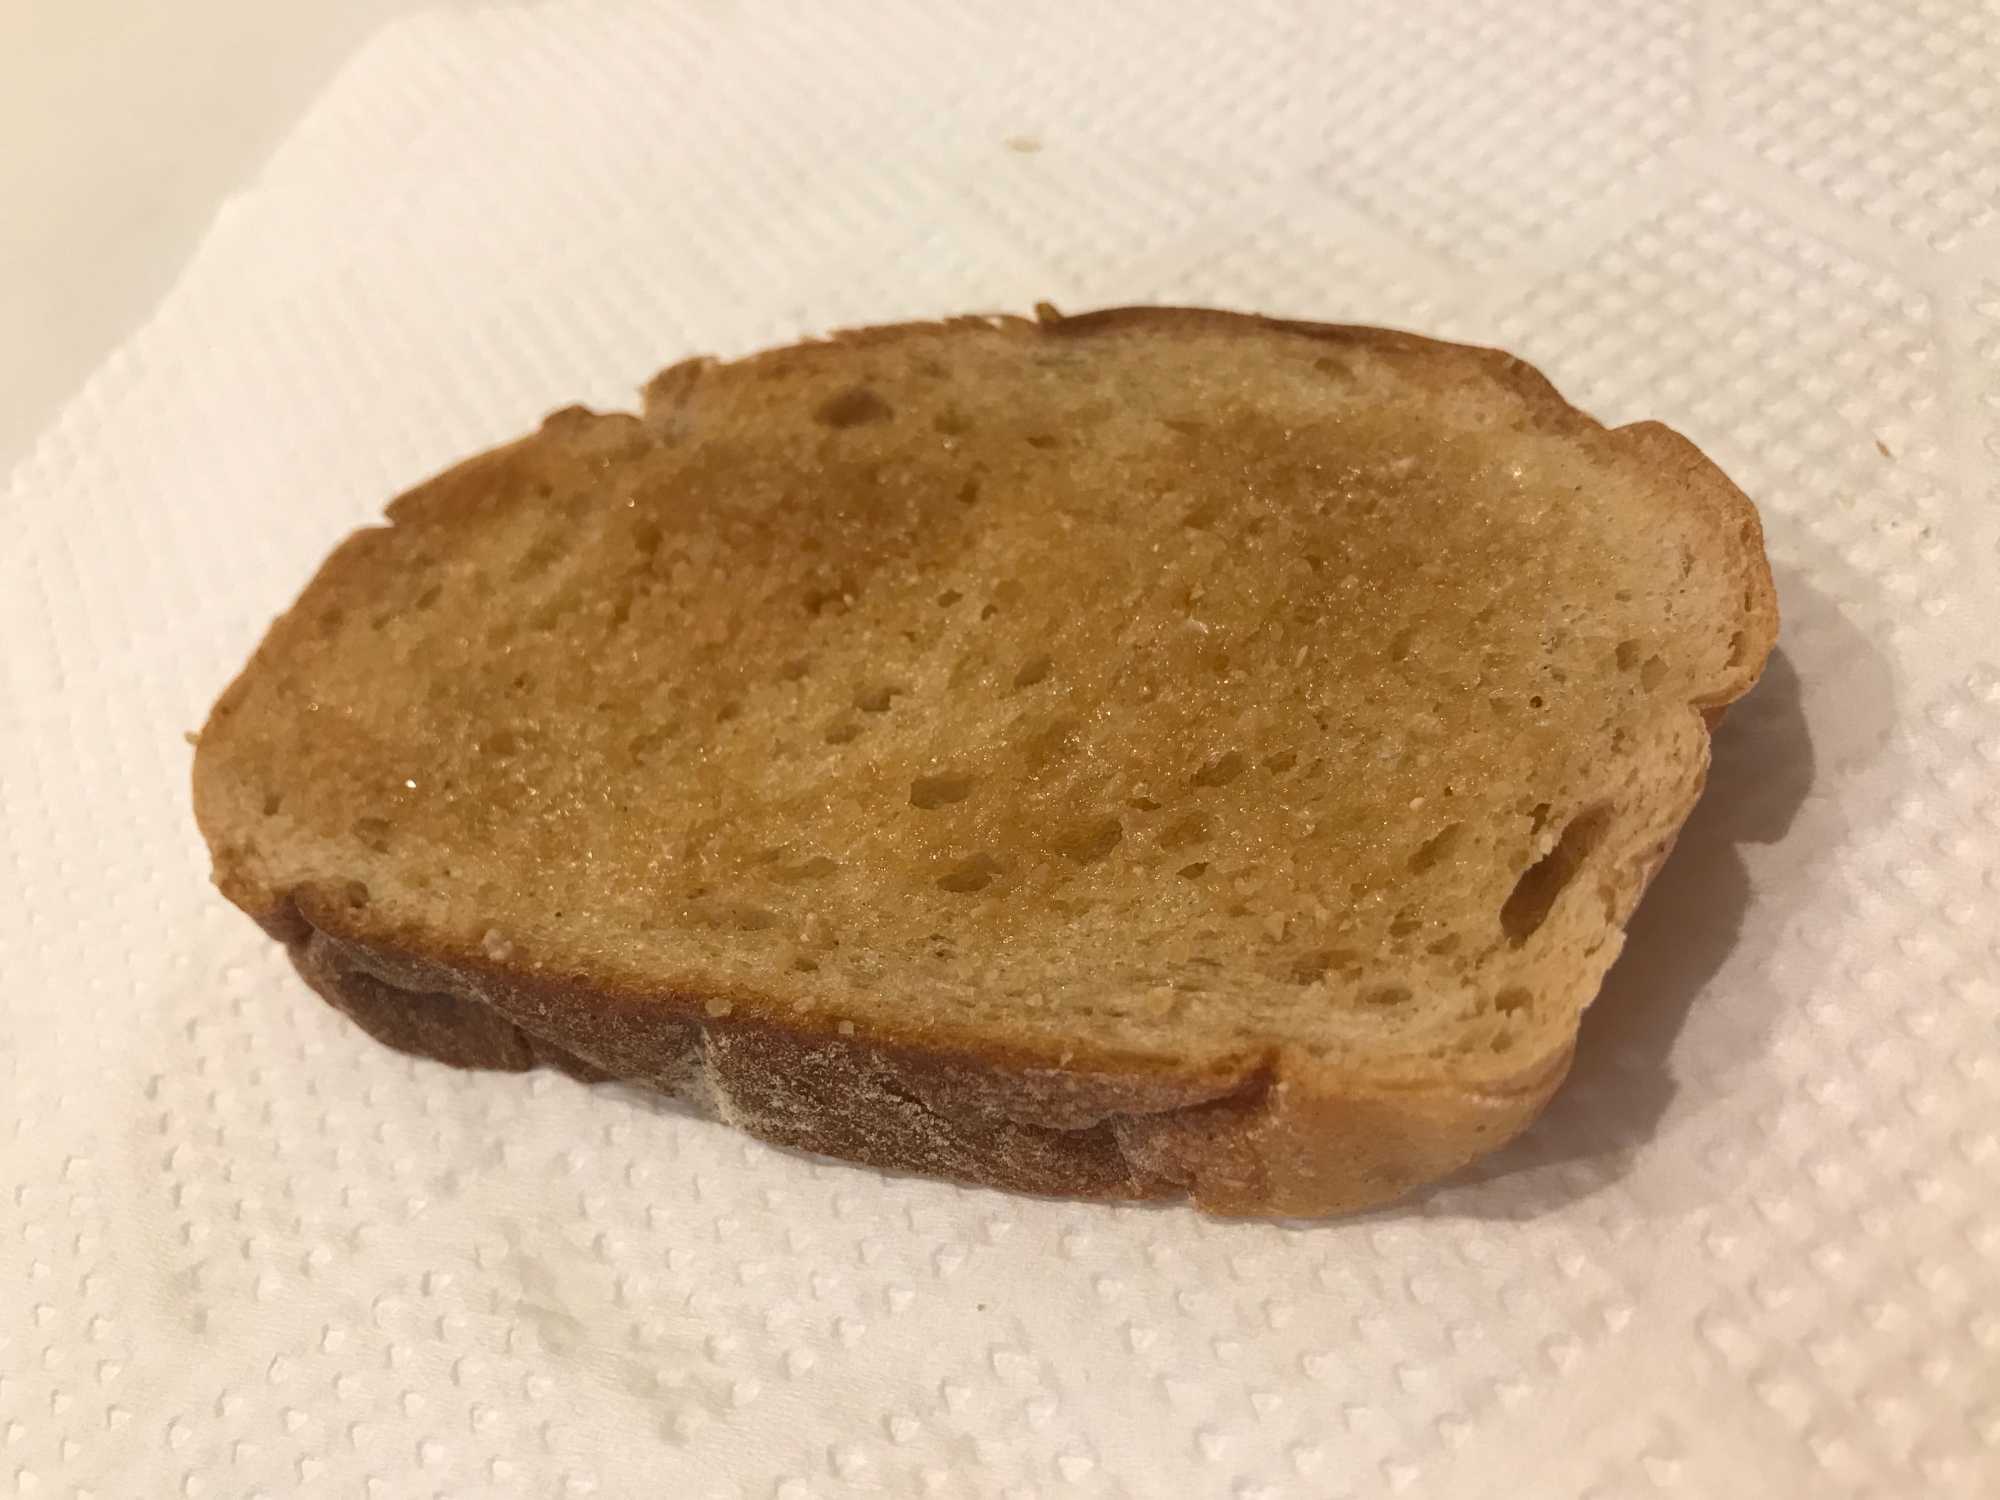 【朝ごパン】玄米パンでシュガートースト